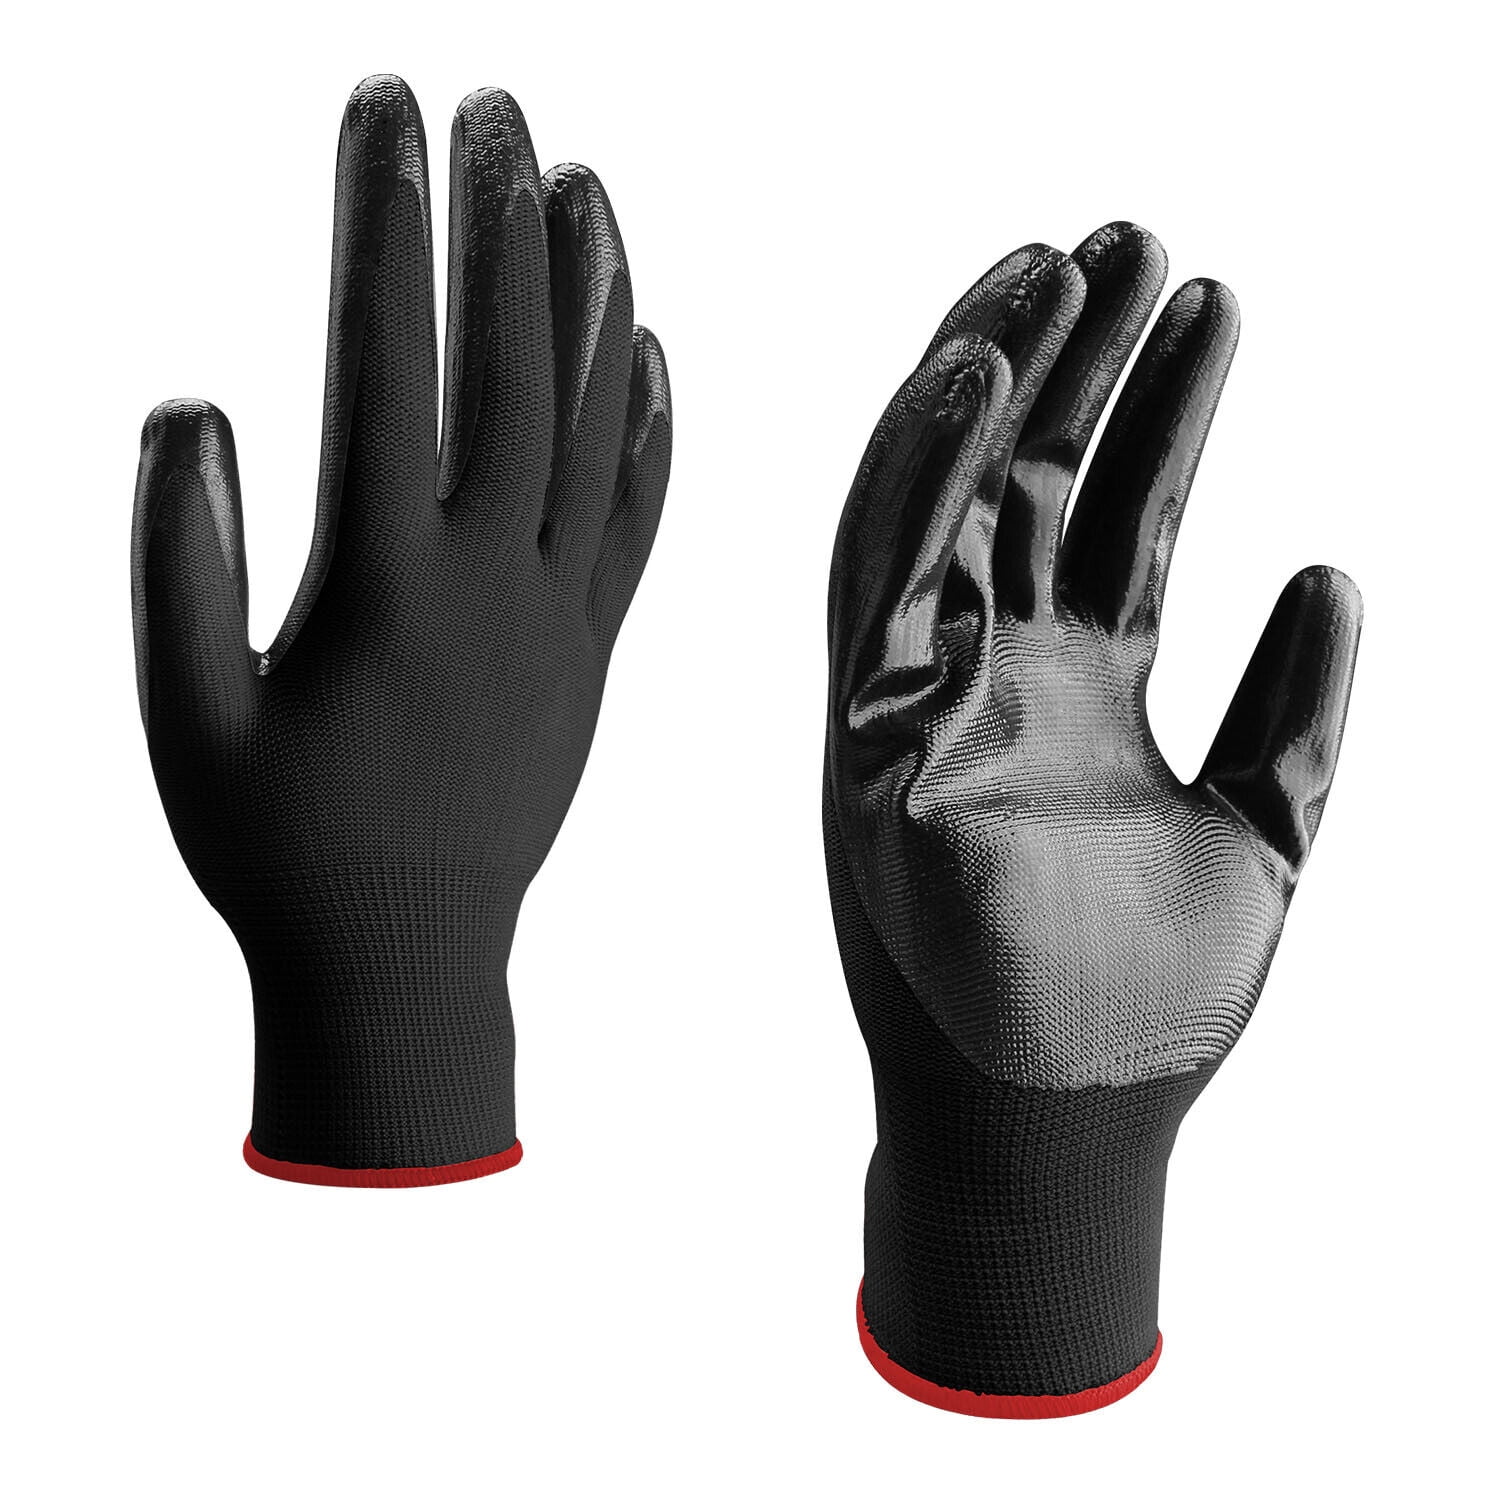 Polyurethane coated work gloves, 2021-06-27